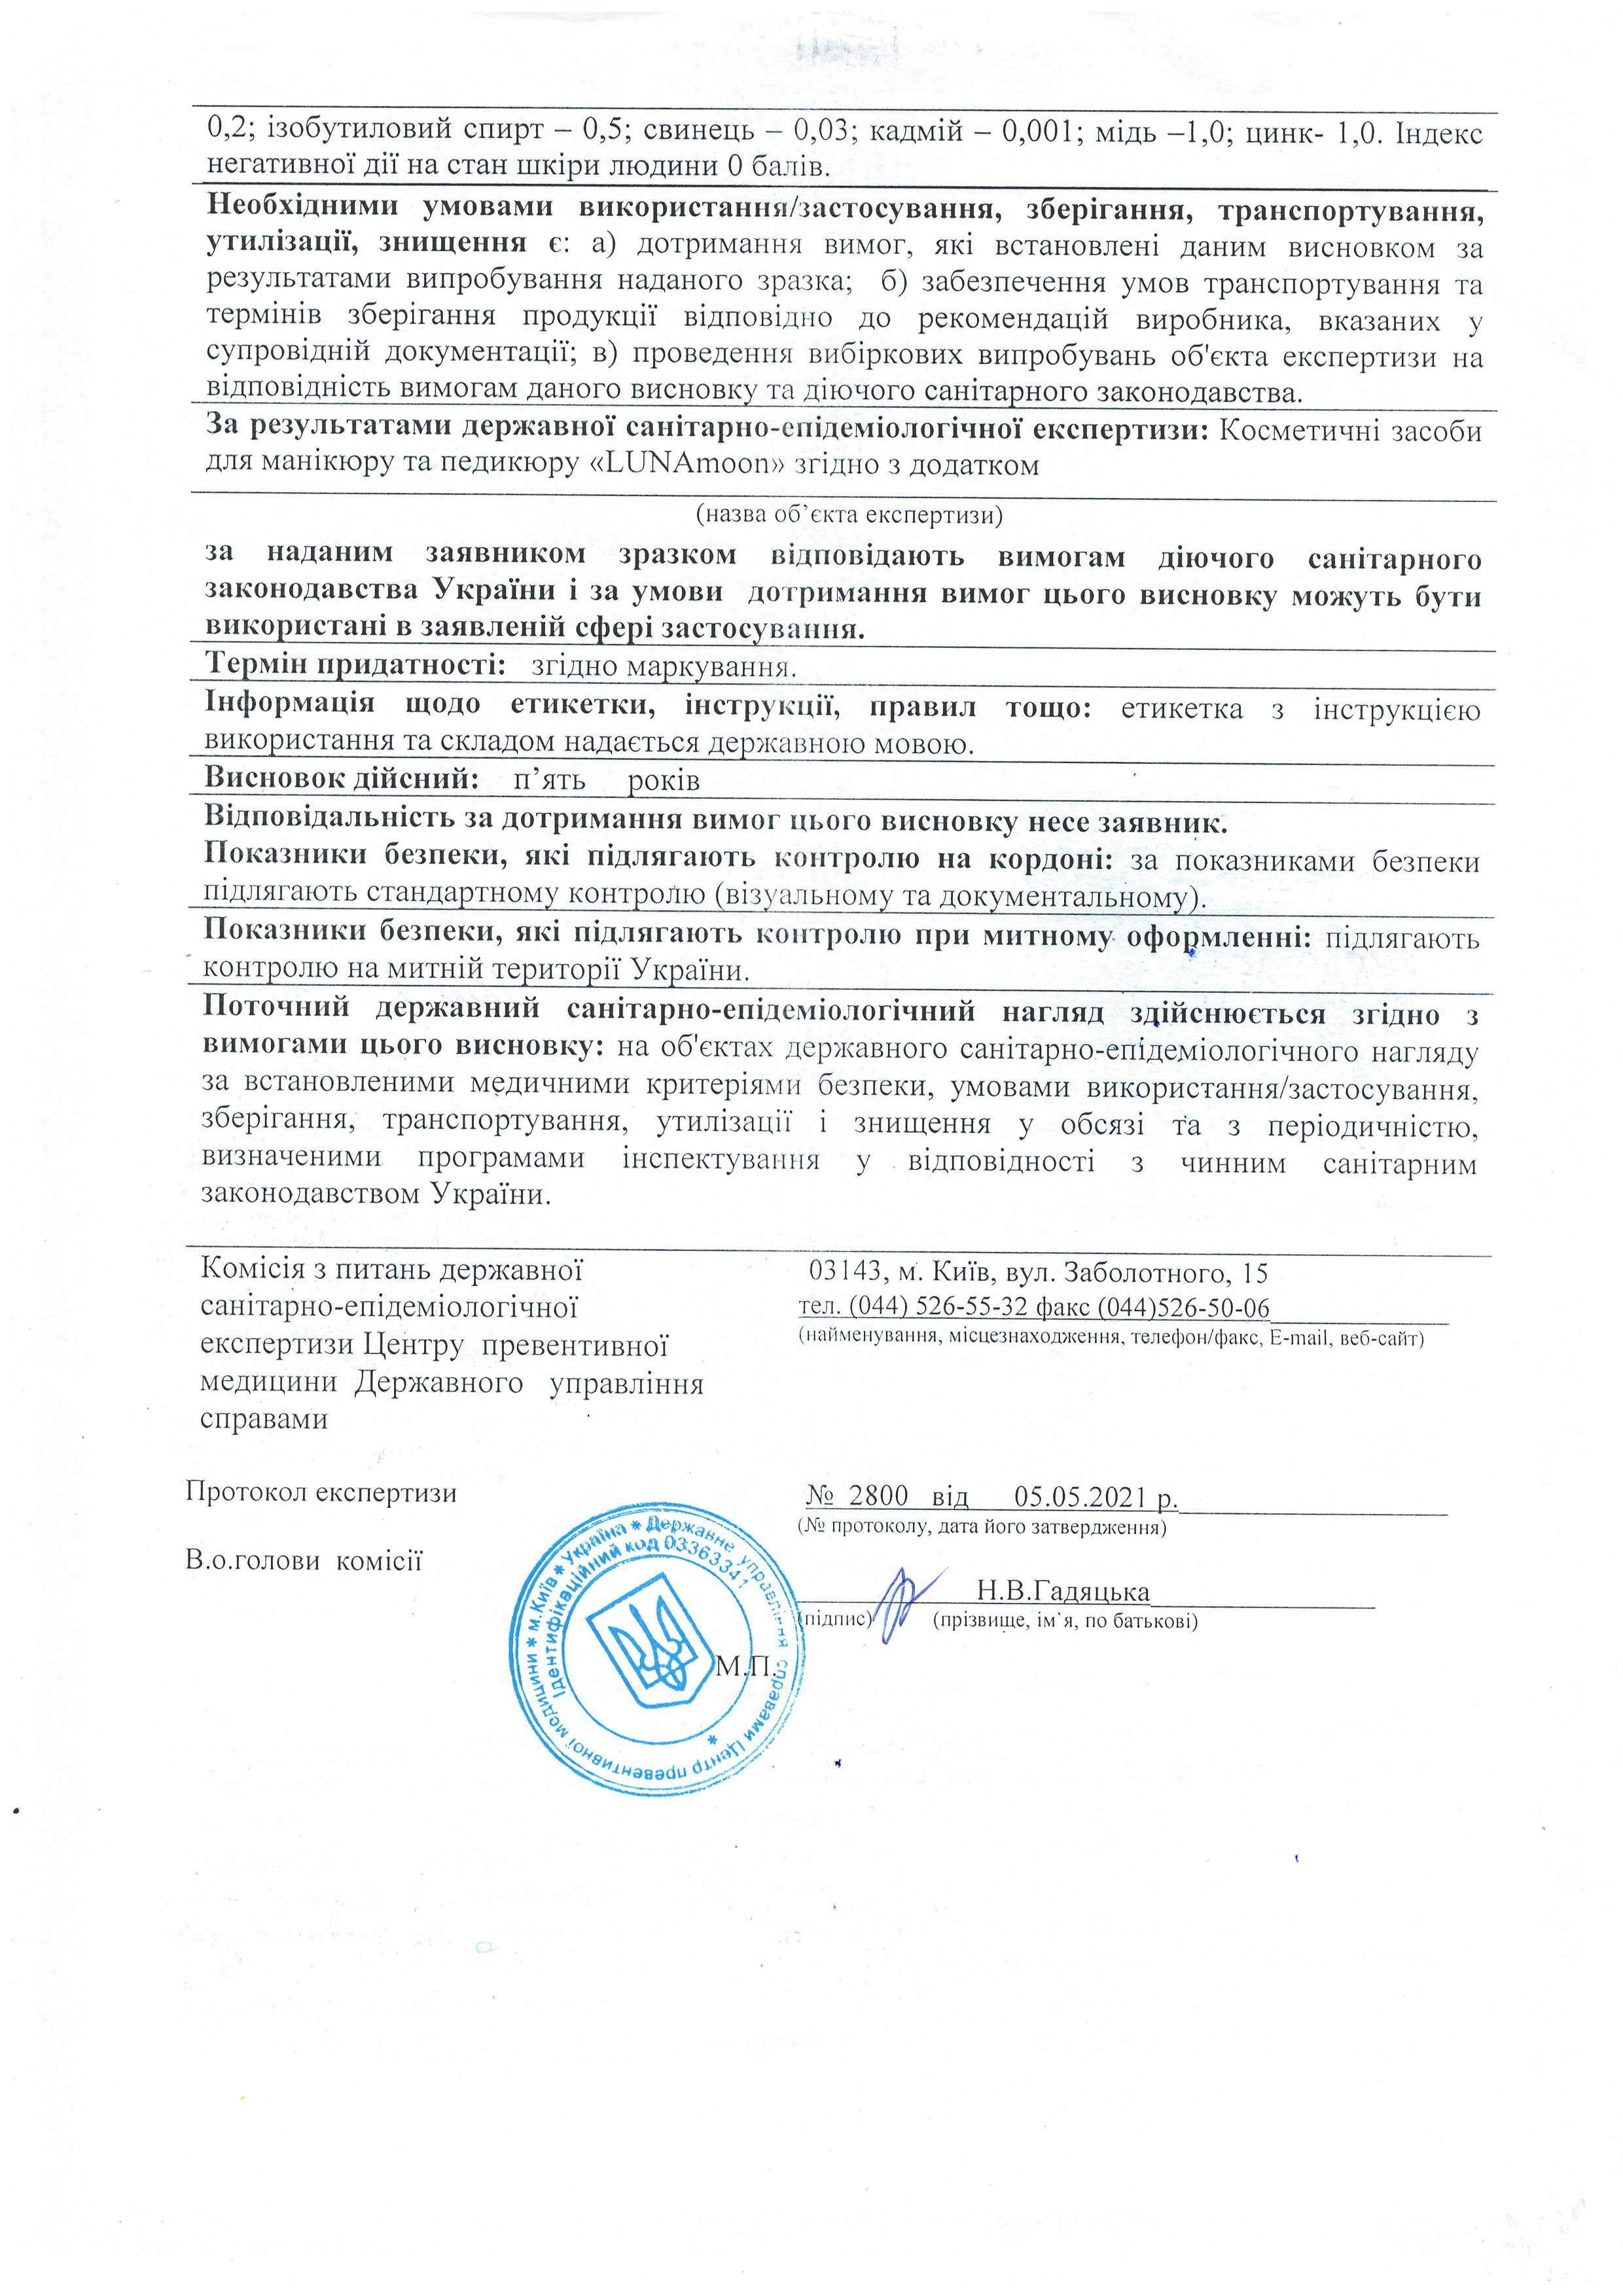 Сертифікат якості на гель-лаки LUNAMoon, сторінка 2